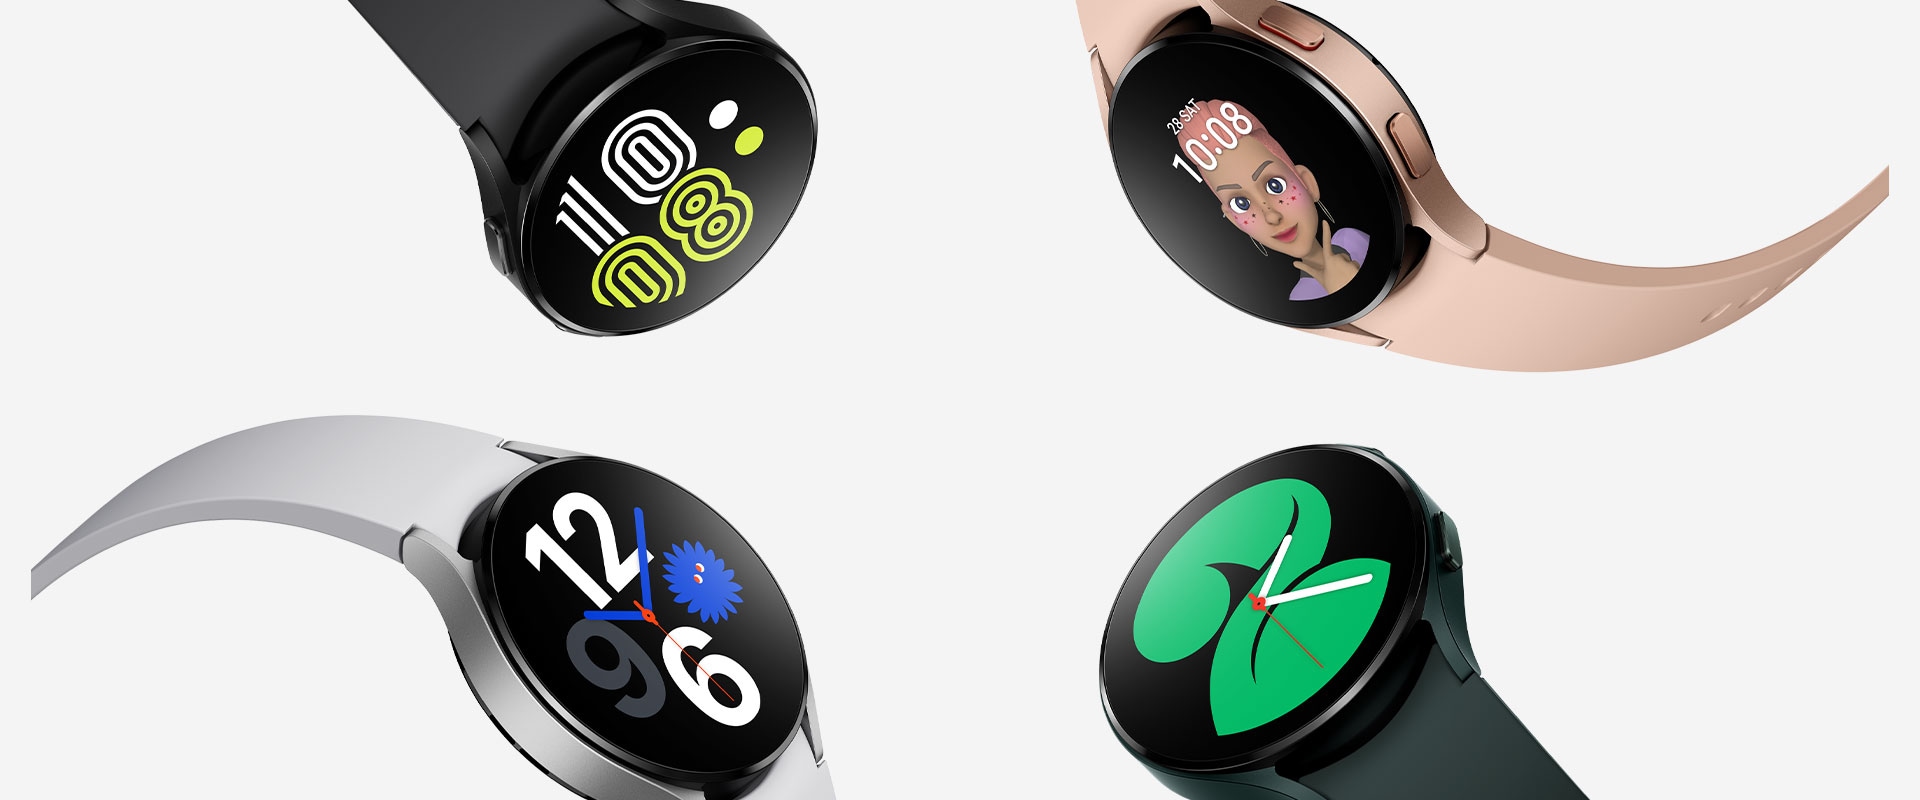 'Quatre Galaxy Watch 4 sont regroupées, chaque montre présentant de manière visible différents styles de cadrans pour indiquer l’heure. Chaque montre est de couleur différente : noir, or rose, vert et argent.